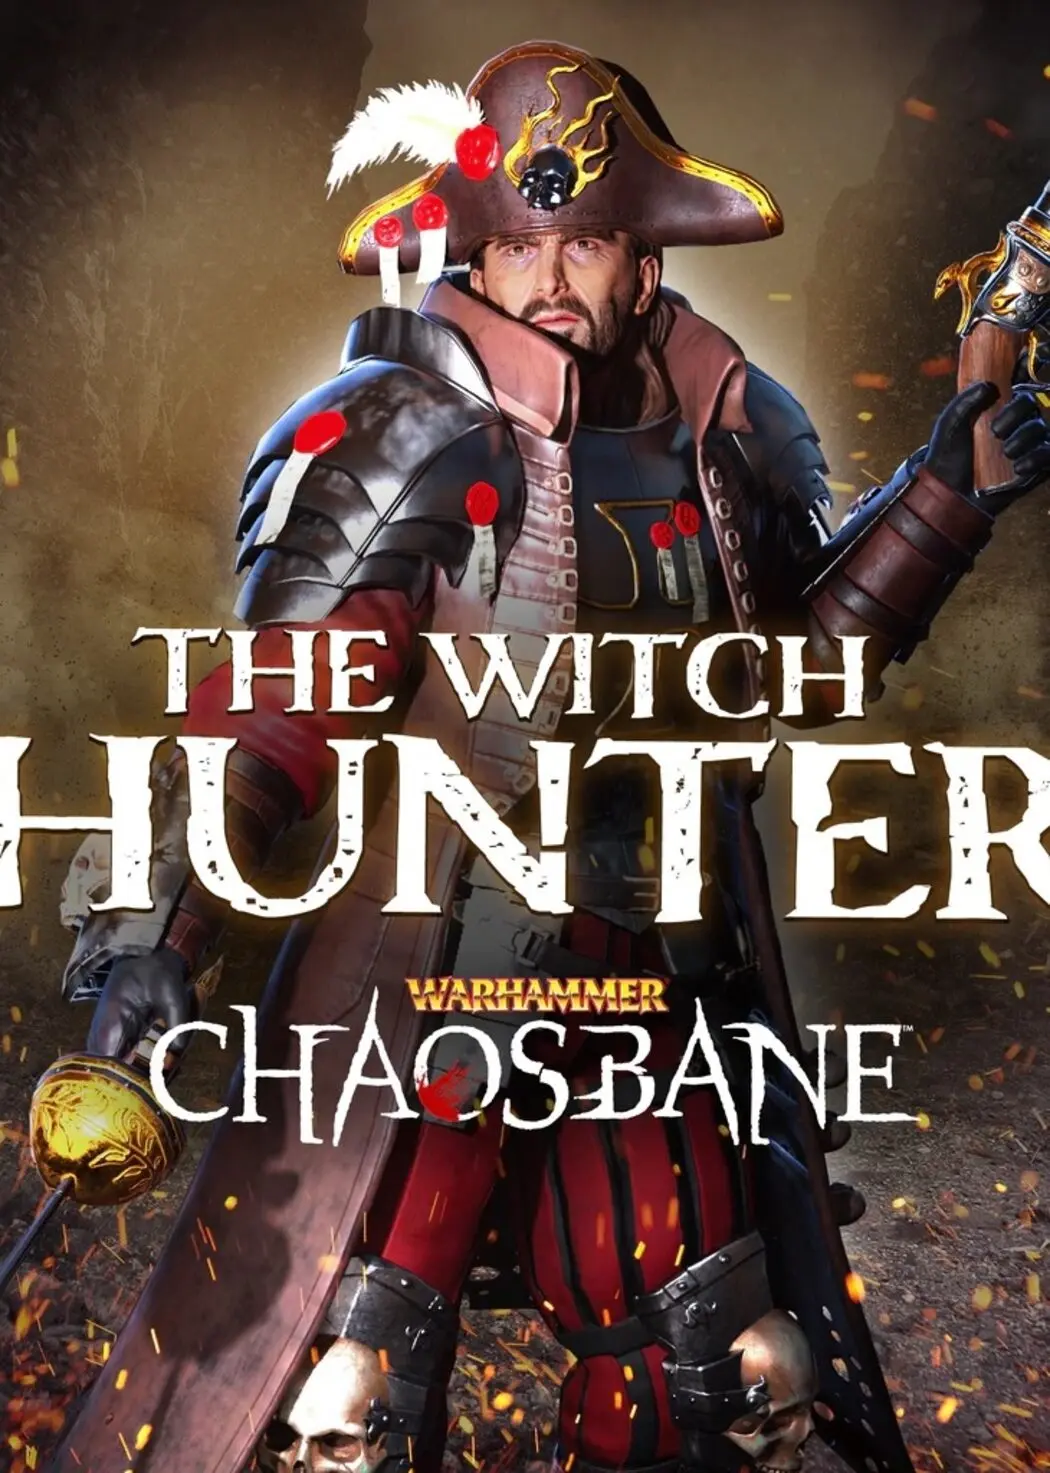 Warhammer: Chaosbane - Witch Hunter DLC (PC) - Steam - Digital Code